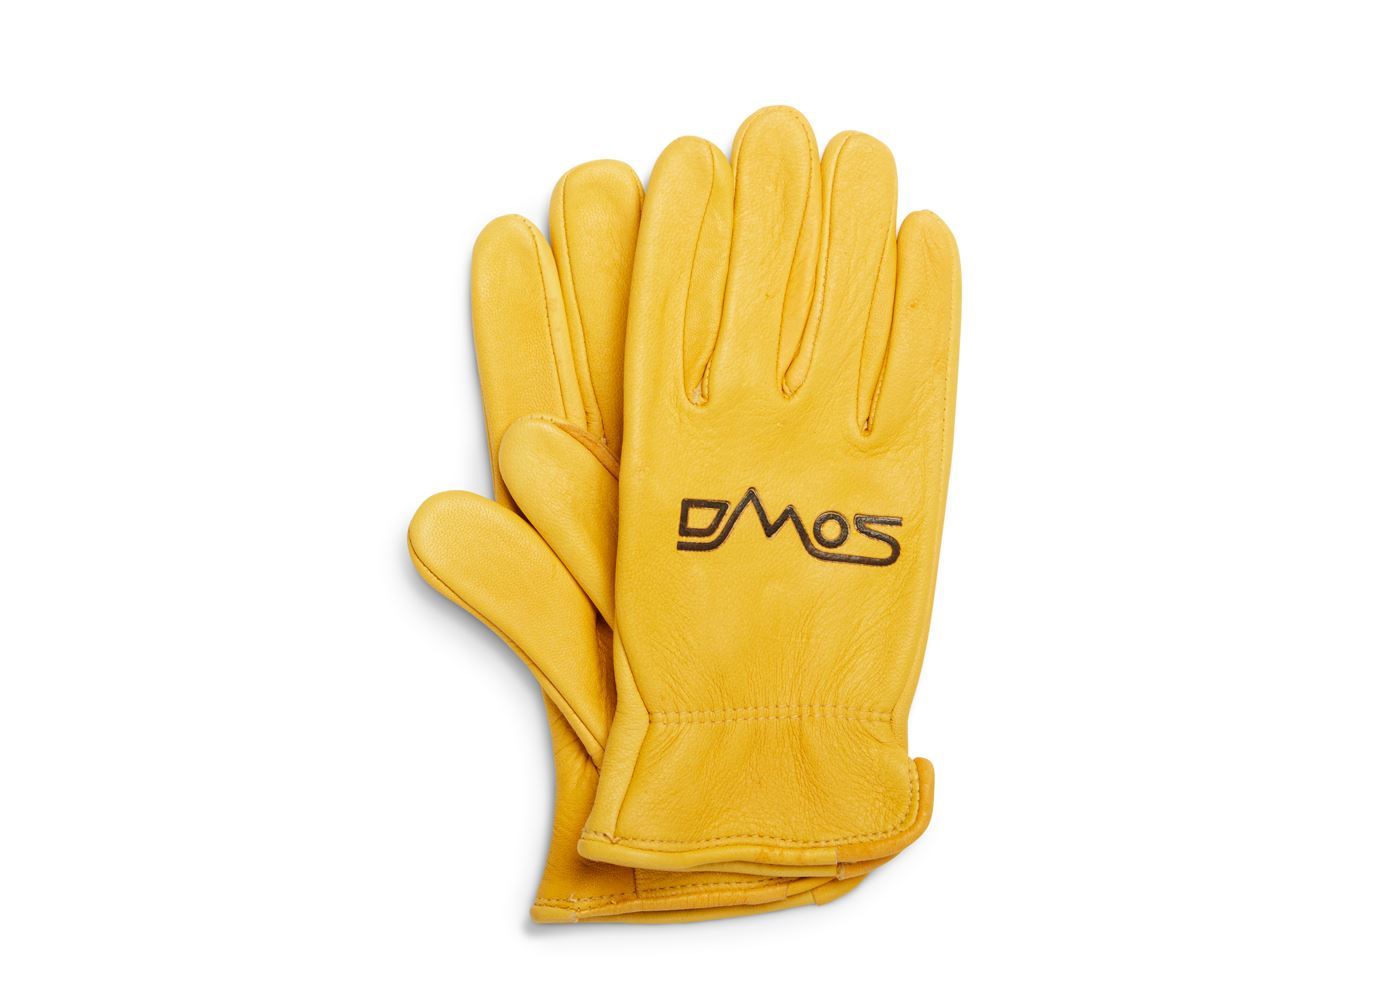 DMOS Branded Deerskin Gloves